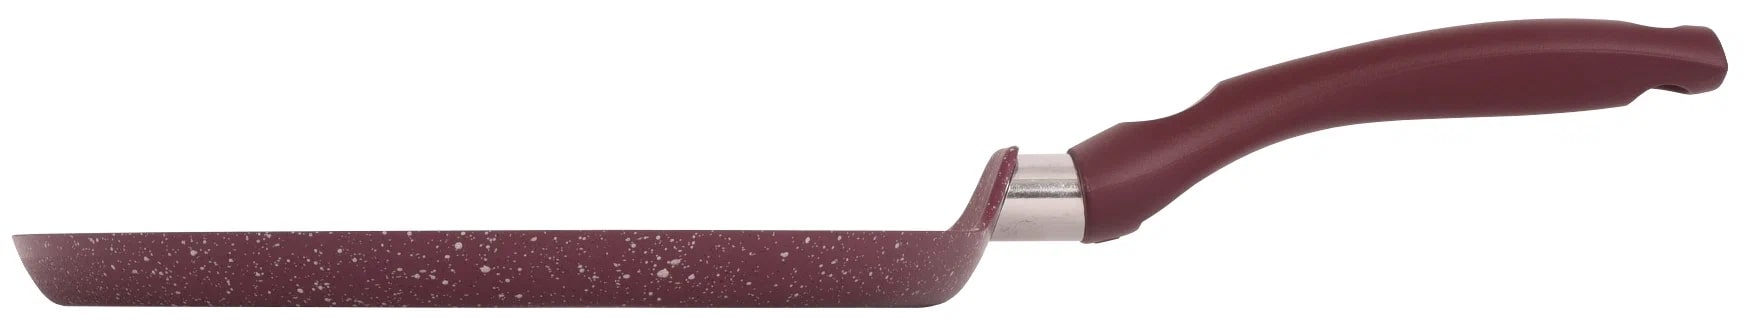 Kukmara Сковорода блинная 220мм с ручкой, АП линия "Trendy style" (Mystery) сб220tsm, фиолетовый